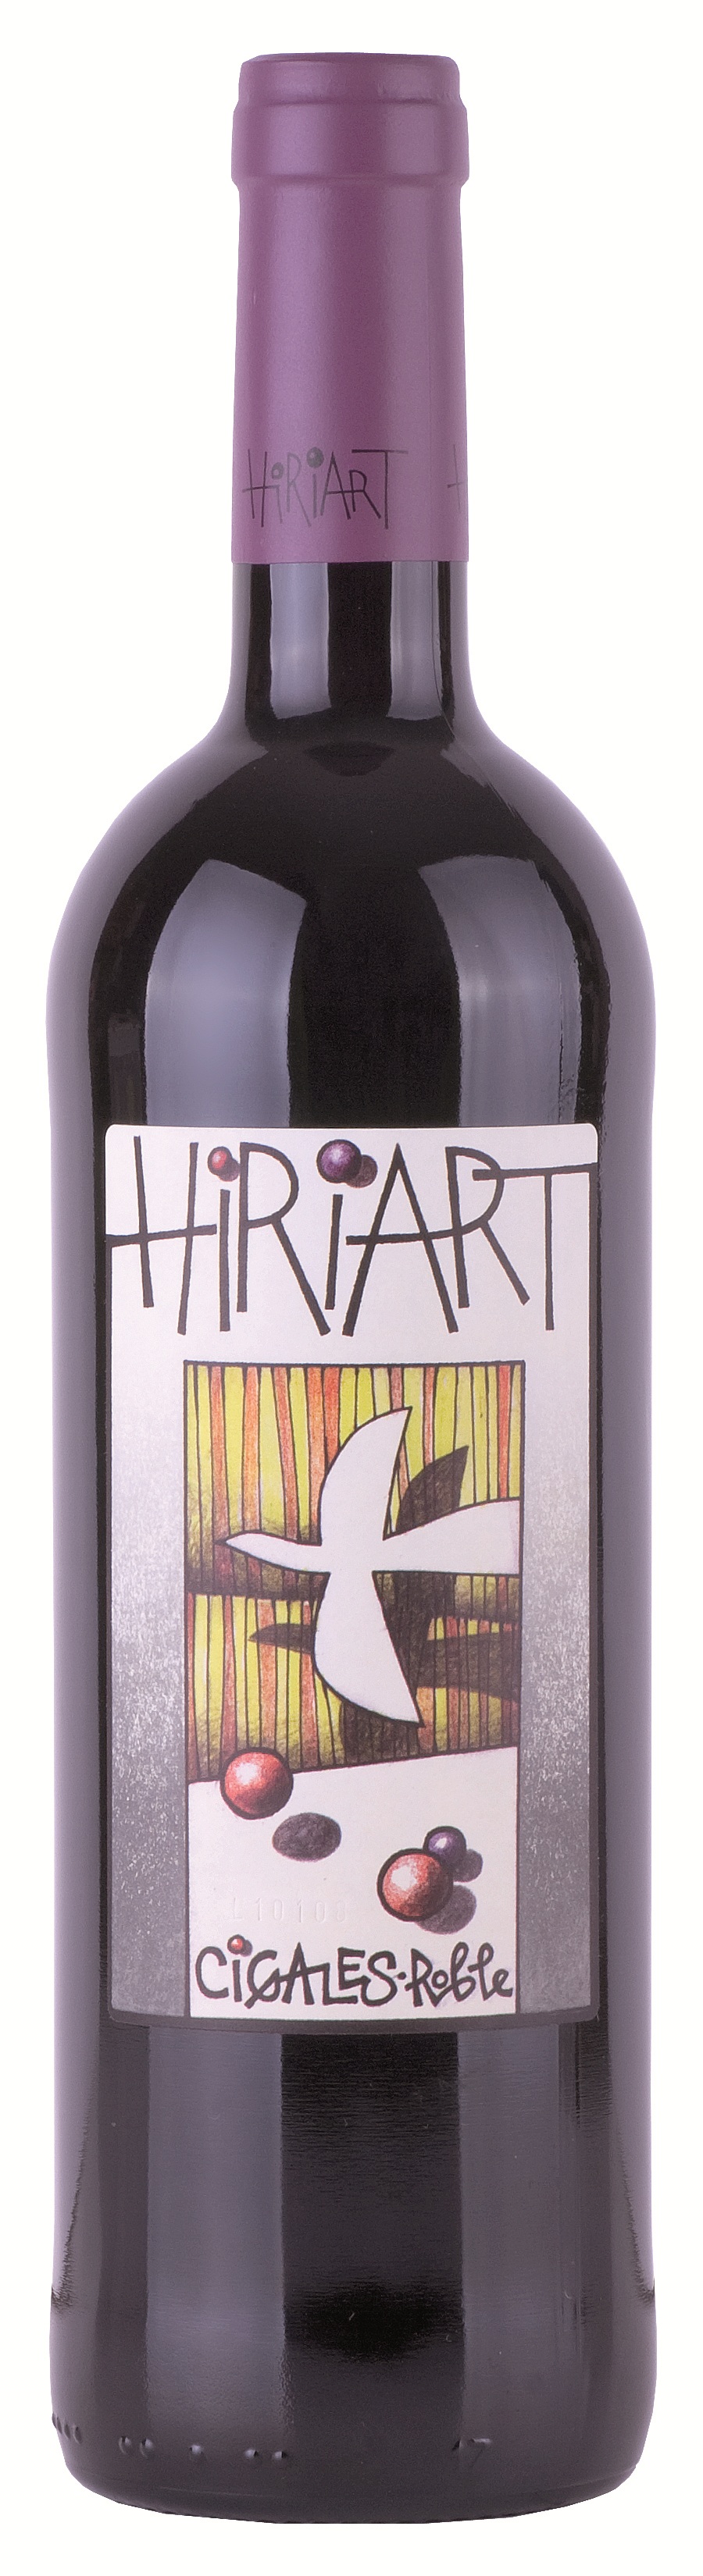 Logo Wine Hiriart Tinto Roble